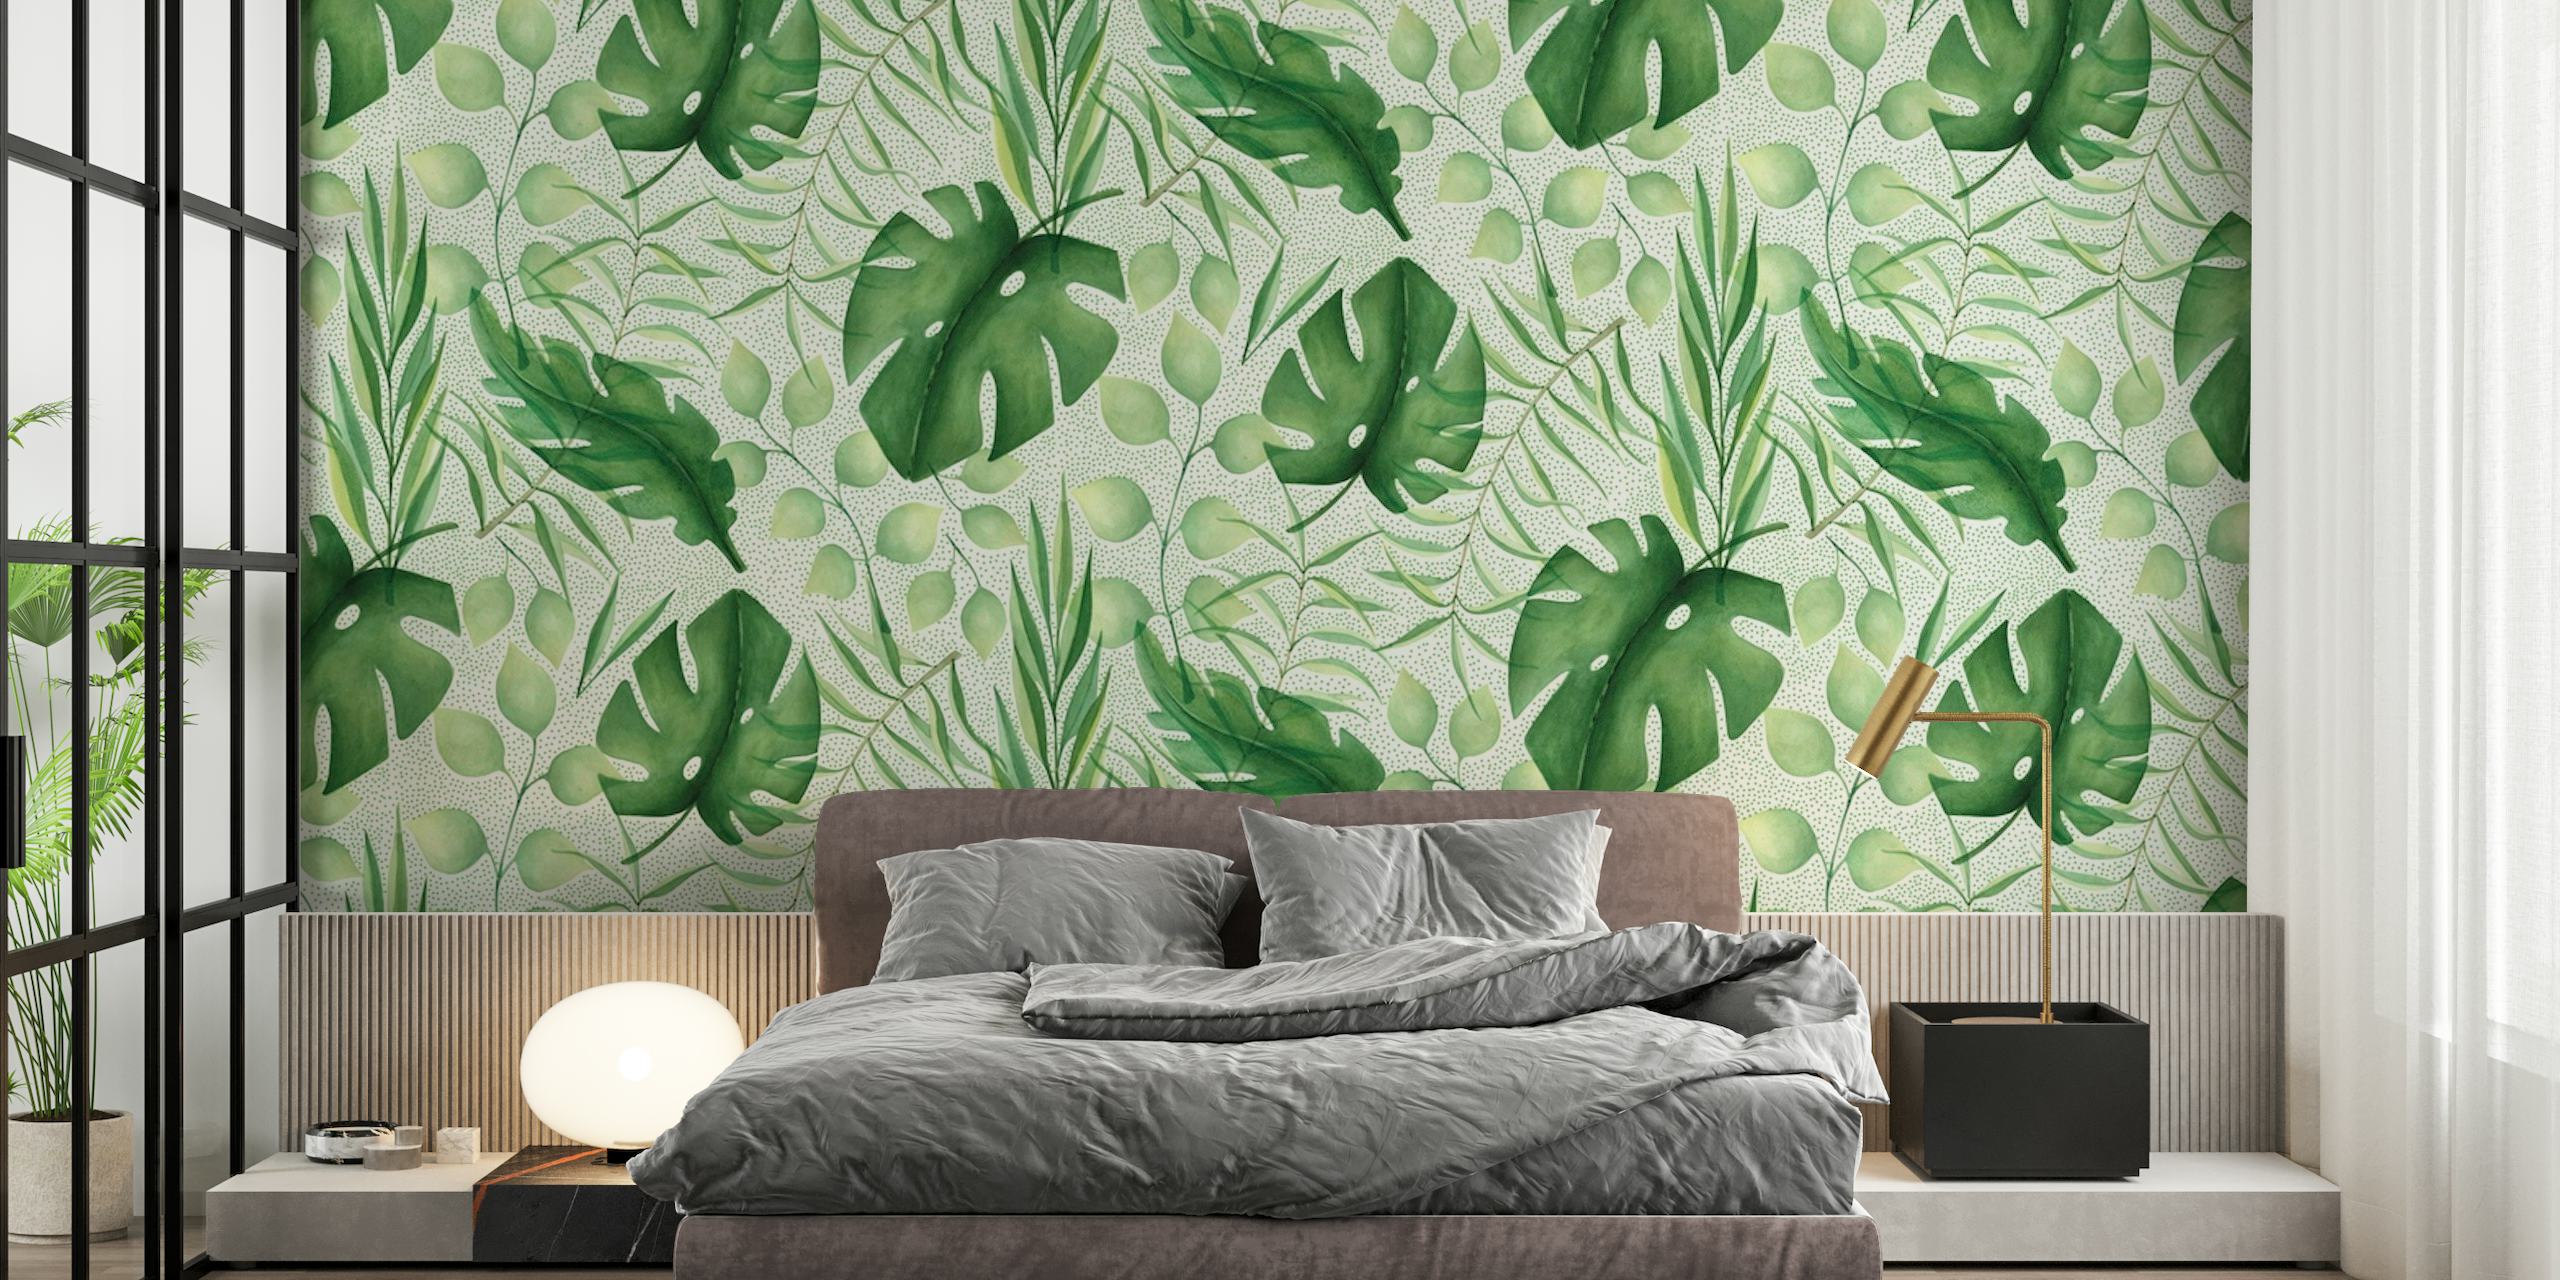 Tropicana - Tropical Design wallpaper